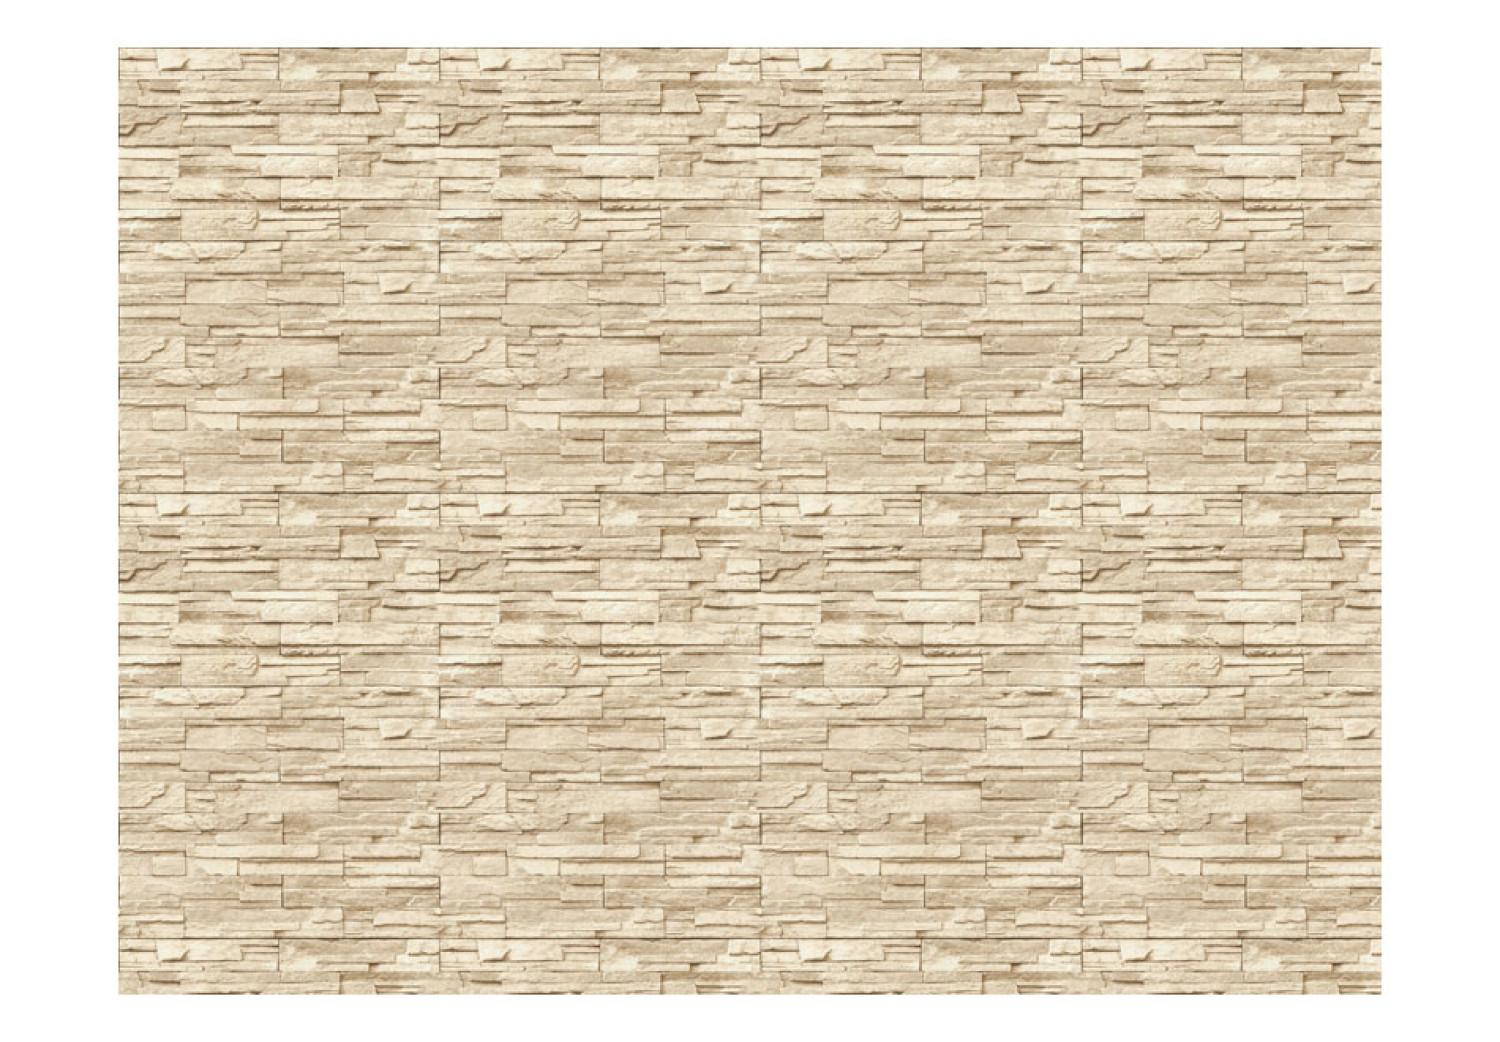 Fotomural Elegancia beige - fondo clásico con patrón de textura de piedra clara